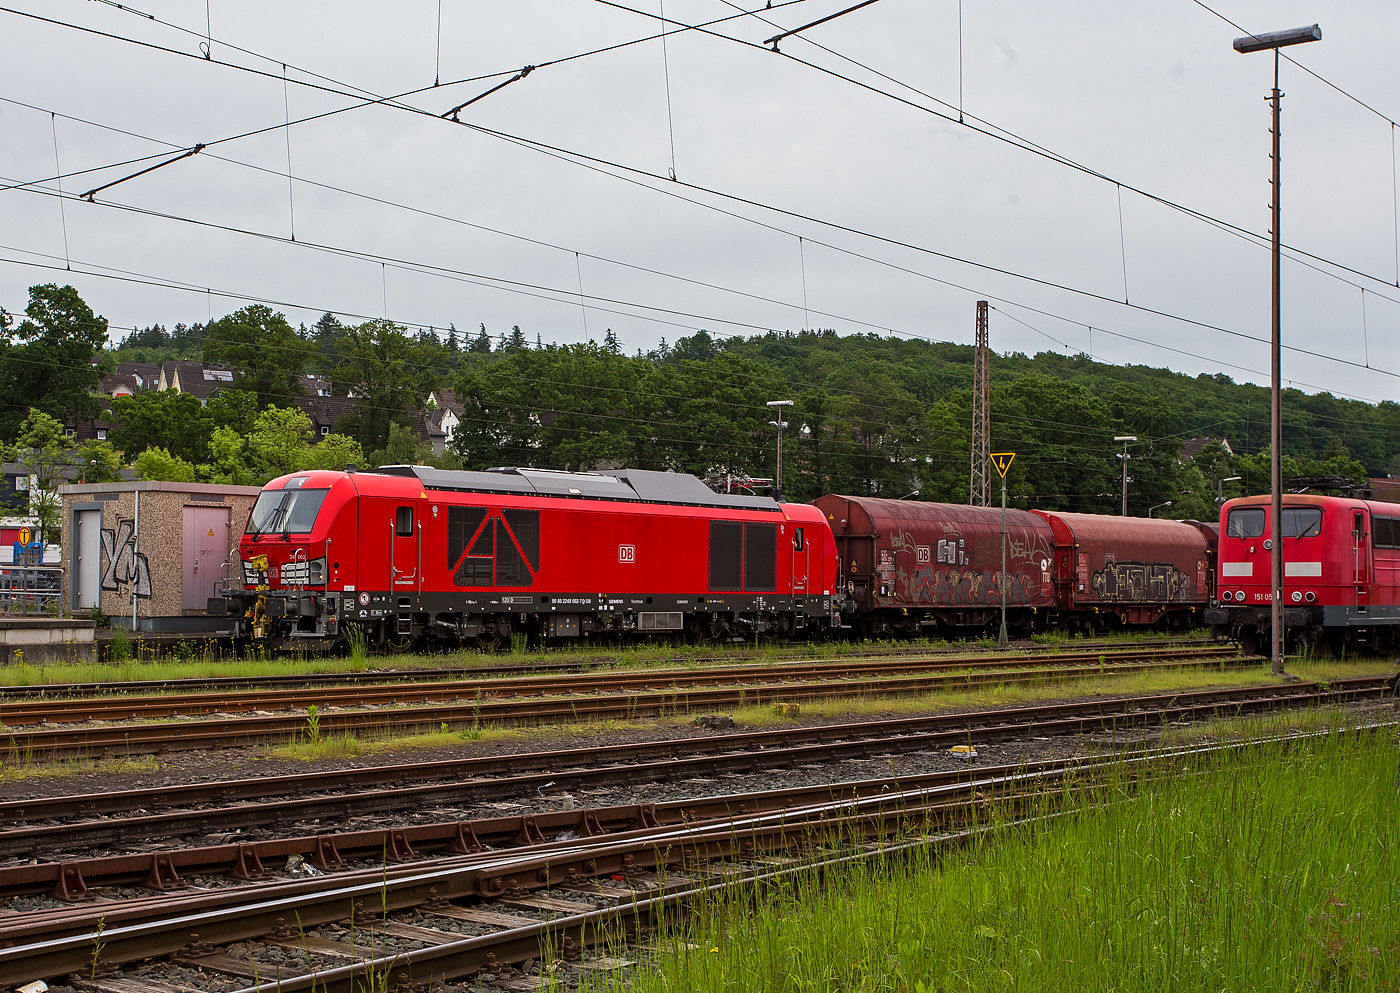 Ich war schon berrascht dass ich diese neuen Zweikraftlokomotiven „Siemens Vectron Dual Mode light“ (BR 249) der DB Cargo AG in Kreuztal nun schon sehen konnte und dann auch gleich 3 Stck. Am 21 Mai 2024 waren hier die 249 002-7 (0 80 2249 002-7 D-DB), die 249 003-5 (90 80 2249 003-5 D-DB) und die 249 006-8 (90 80 2249 006-8 D-DB).

Hier drckt die 249 002-7 (0 80 2249 002-7 D-DB) der DB Cargo AG einen Gterzug im Last-Mile-Modus (mit Dieselantrieb) vom Abstellbereich beim Bahnhof Kreuztal zum Rangierbahnhof (Rbf Kreuztal). Da hier Oberleitungen vorhanden sind, wre eigentlich der Last-Mile-Modus (Dieselantrieb) nicht ntig, aber vermutlich war es ein Test- bzw. Schulungsbetrieb.

Die Vectron Dual Mode light 249 002-7 der Baureihe 249 wurden 2022 von Siemens Mobility GmbH in Mnchen-Allach unter der Fabriknummer 23060 gebaut. Die Lok war von Ende Mai 2022 erst durch Siemens Mobility GmbH, als 90 80 2249 002-7 D-SDEHC registriert/eingestellt. Erst nach der Abnahme durch die DB Cargo und den Verkauf an diese im Mrz 2024 wurde sie als 90 80 2249 003-5 D-DB eingestellt. Die Loks der Baureihe 249 haben die Zulassung fr Deutschland und eine Hchstgeschwindigkeit von 120 km/h.

Diese Lokomotivbaureihe wird man bald auf deutschen Gleisen wohl oft sehen knnen. Denn die DB Cargo erneuert seine Rangier- und Strecken-Lokflotte und beschafft neue Zweikraftlokomotiven der BR 249, als Ersatz fr die lteren Diesellokomotiven der Reihe 294 (V 90). Es wurde Rahmenvertrag mit dem Hersteller Siemens Mobility ber bis zu 400 Fahrzeuge, die einem Investitionsvolumen von deutlich ber einer Milliarde Euro entsprechen, angeschlossen. Geliefert werden Lokomotiven vom Typ Vectron Dual Mode light mit spezifischen Anpassungen fr das von DB Cargo geplante Einsatzspektrum. 
Zunchst bestellt die DB Cargo 150 Loks der Baureihe 249. Diese DB Loks sind aber stark modifiziert, so betrgt bei ihnen die Achslast maximal 21 t (statt 22,5 t). Sie besitzen in den Fhrerstnden jeweils einen zustzlichen Seitenfahrschalter sowie ein Schwanenhalsmikrofon. Weitere Unterschiede sind die Ausrstung mit Rangierkupplungen Rk900, Rangiertritten neben den Puffern, zustzlichen berwachungskameras zur berwachung des Raumes zwischen den Lokomotiven und Warnleuchten fr den Betrieb mit Funkfernsteuerung.

Die Loks der Baureihe 249 (Vectron Dual Mode light) besitzen gegenber der BR 248 einem kleineren Dieselmotor von Cummins (QST 30-L) mit einer Leistung von 950 kW (anstatt des MTU 16V 4000 R84 mit 2.400 kW Leistung). Allein durch den kleineren Motor wurden ca. 5,5 t Gewicht eingespart.  So ist die speziell fr die Anforderungen von DB Cargo optimierte „Vectron Dual Mode light“ imehrere Tonnen leichter als herkmmliche Modelle und kann so auch auf Nebenstrecken und Gleisanschlssen mit geringerer Traglast eingesetzt werden. Diese Eigenschaften machen sie besonders geeignet fr den Einzelwagenverkehr, der durch die Reduzierung des Lokwechsels schneller und effizienter wird-

TECHNISCHE DATEN der Vectron Dual Mode light (BR 249)
Einsatzbereich: Gterverkehr und Zugbildung
Spurweite: 1.435 mm (Normalspur)
Achsformel: Bo'Bo'
Lnge ber Puffer: 20 510 mm
Drehzapfenabstand: 10.800 mm
Achsabstand im Drehgestell: 2.700 mm
Breite: 3.020mm
Hhe:  4.220 mm
Raddurchmesser : 1.100 mm (neu) / 1.020 mm (abgenutzt)
Gewicht:  84 t (bei vollen Vorrten)
Achslast: 21 t
Spannungssysteme (bei E-Betrieb): 15 kV, 16,7 Hz
Dieselmotor: Gedrosselten  V12-Zylinder -Viertakt-Dieselmotor mit Turboaufladung und Ladeluftkhlung, vom Typ Cummins QST 30-L
Dieselmotorleistung an der Kurbelwelle (gedrosselt): 950 kW (1.291 PS)
max. Dieselmotorleistung (Kw): 1.119 kW (1.521 PS)
Motorhubraum 30,5 Liter (Bohrung 140 mm x Hub 165 mm)
Dieselmotor Nenndrehzahl: 2.100 U/min
Dieselmotor Motorgewicht (trocken): 3.555 kg
Max. Leistung am Rad E-Antrieb: 2.210 kW  (3.005 PS)
Max. Leistung am Rad Dieselbetrieb: 750 kW (1.020 PS) / max. 926 kW mglich
Hchstgeschwindigkeit:120 km/h
Antriebsart: elektrisch oder dieselelektrisch
Kraftbertragung :Teilabgefederter Antrieb (Ritzelhohlwellenantrieb)
Kraftstoffbehlter Nutzvolumen: 1.500 Liter
Anfahrzugskraft:  300 kN
Elektrische Bremskraft: 150 kN
Elektrische Bremsleistung (am Rad): E-Betrieb 2.210 kW / Dieselbetrieb 1.000 kW
Doppeltraktion: ber WTB BB mit typgleichen Fahrzeugen 
Zugsicherung: PZB / fr ETCS vorbereitet
